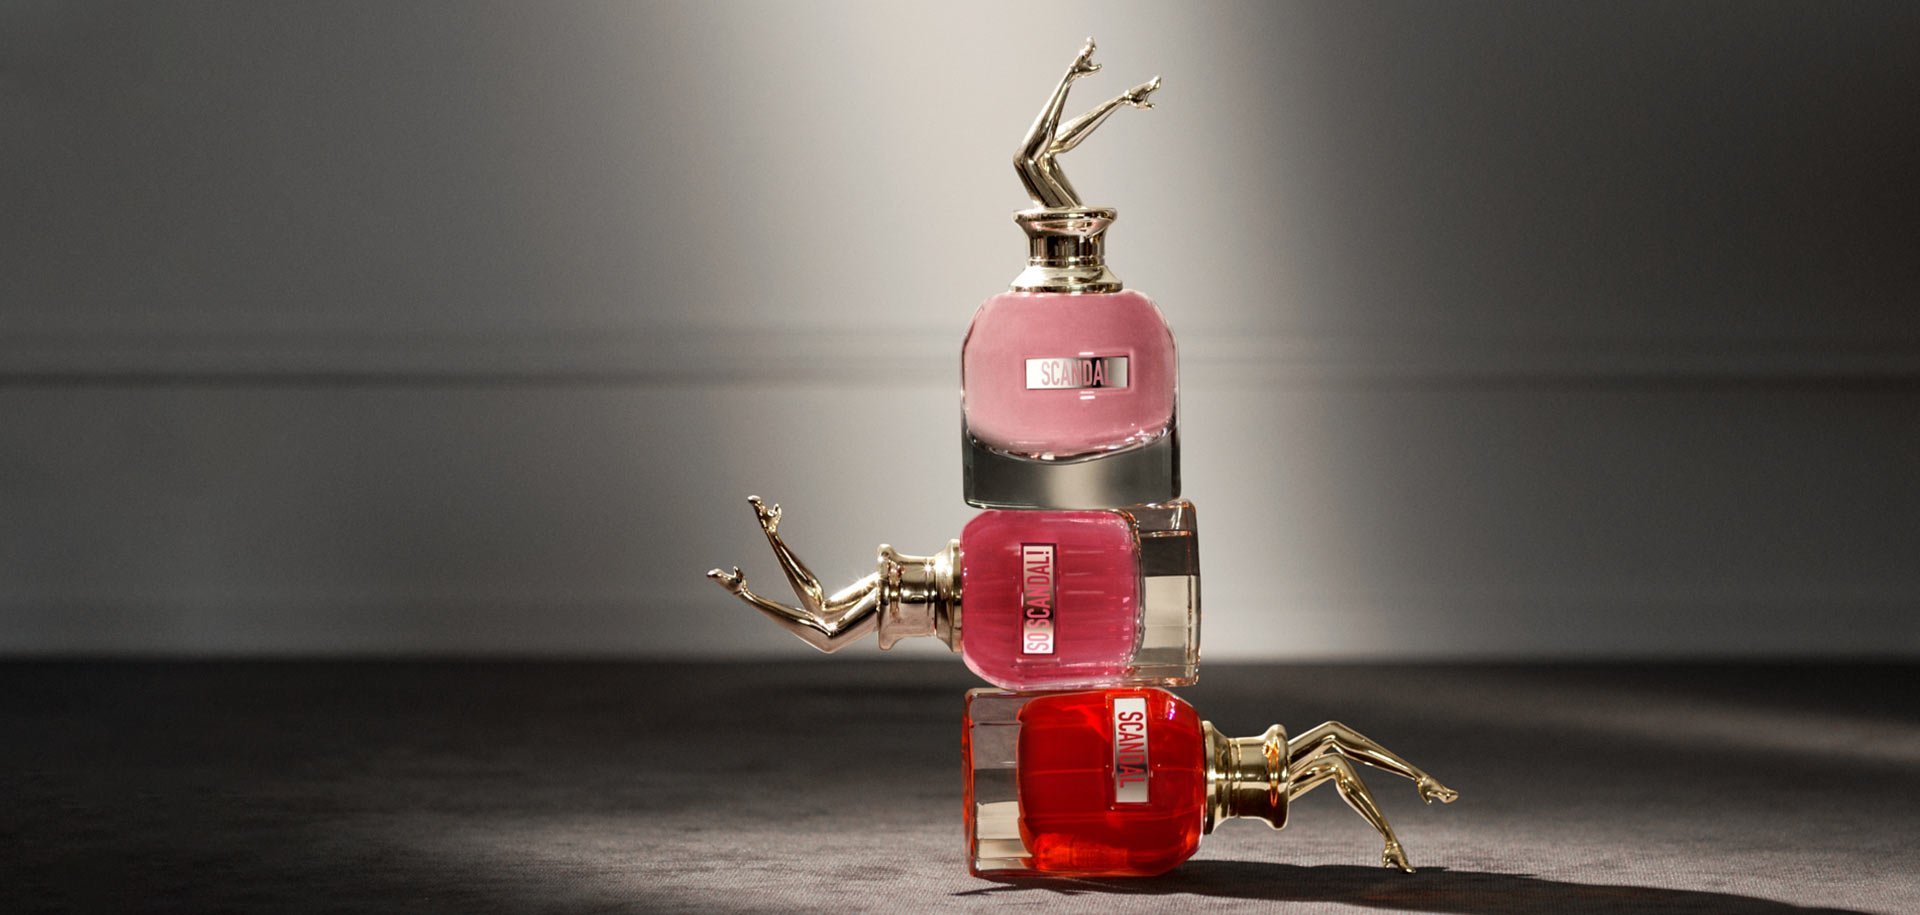 women fragrances by Jean Paul Gaultier